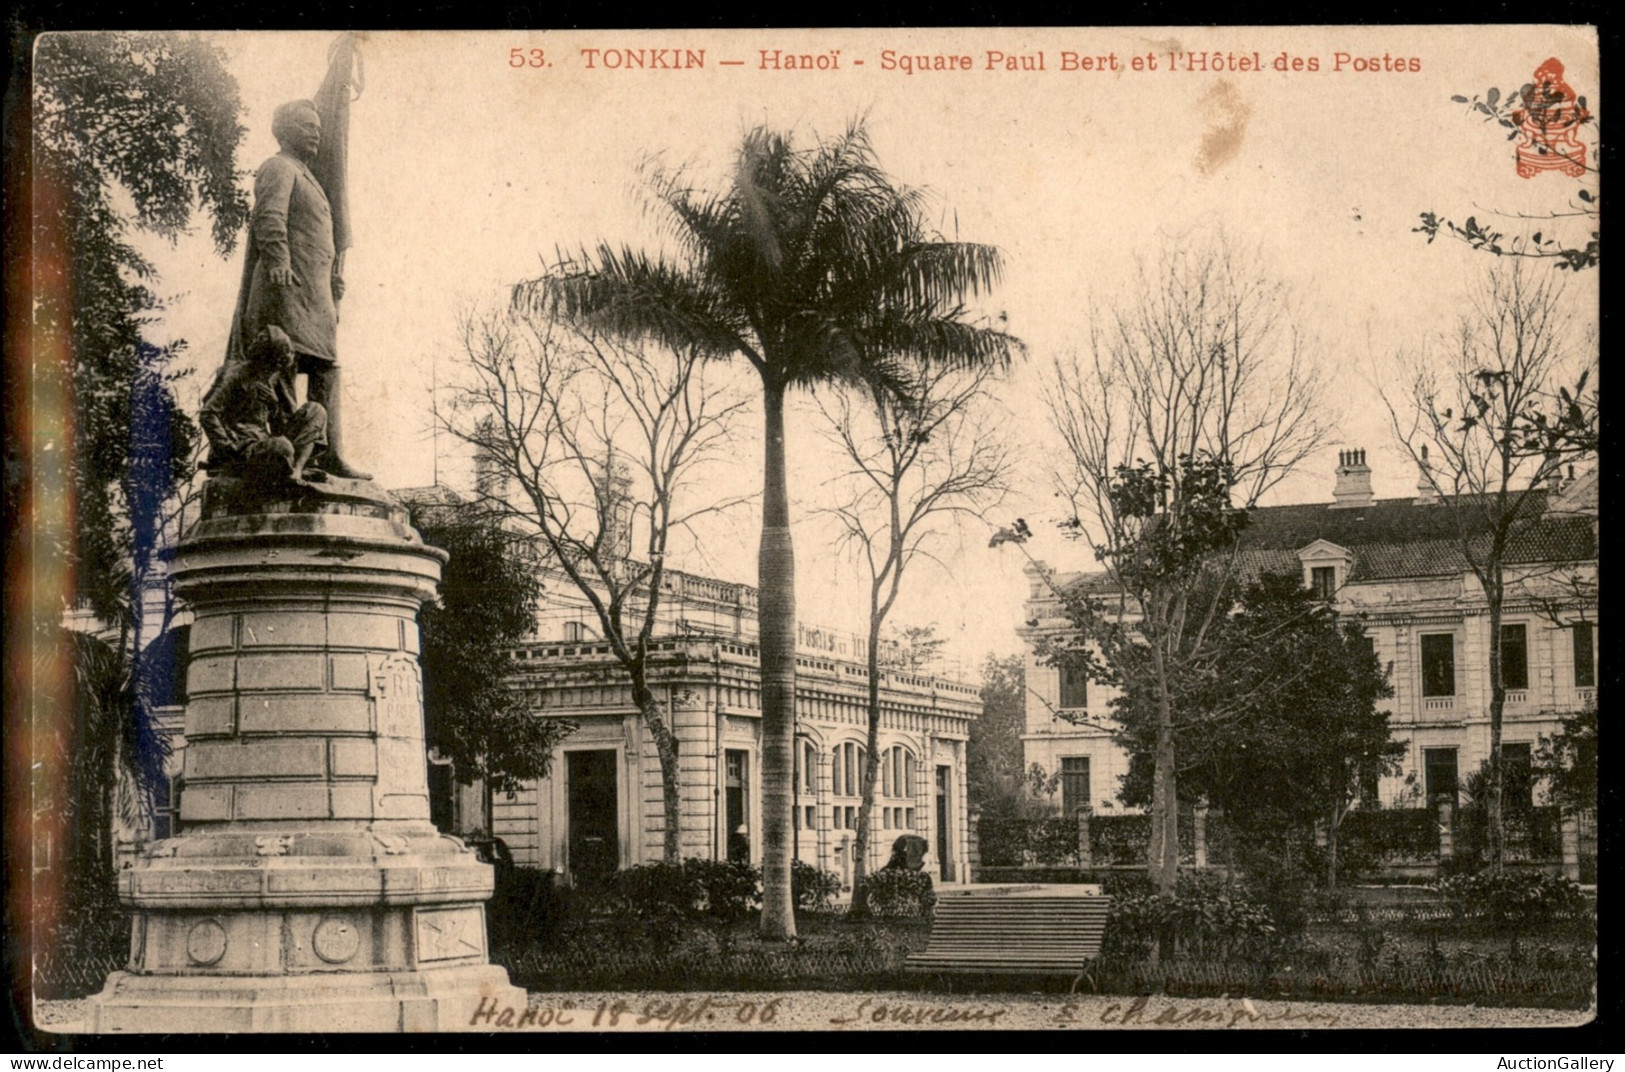 Oltremare - Indocina - 1906/1907 - Insieme di 5 cartoline + 1 busta del periodo